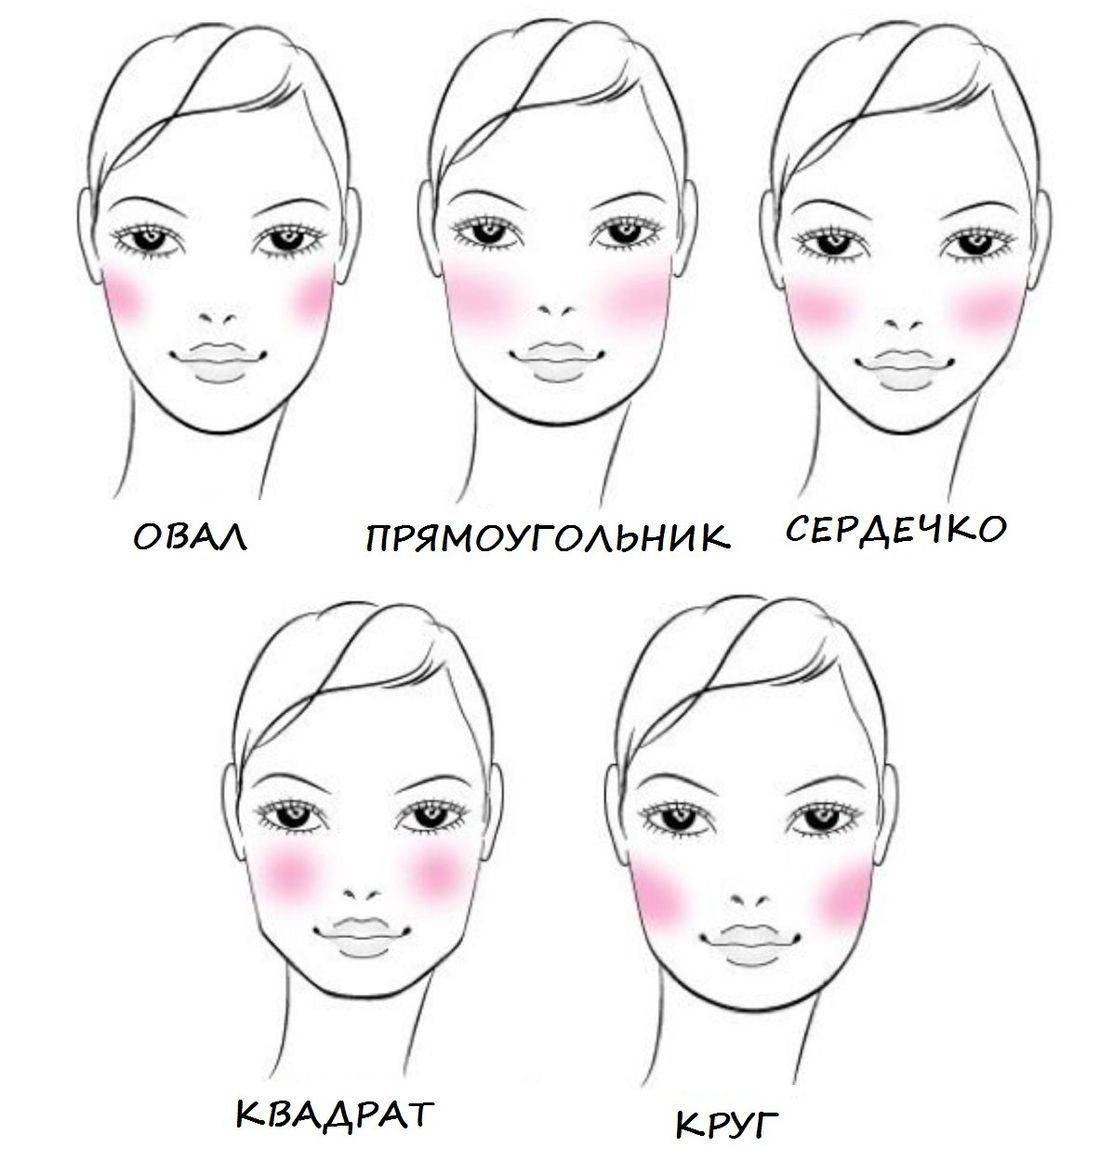 Круглая форма лица и макияж - 37 фото | портал для женщин womanchoice.net